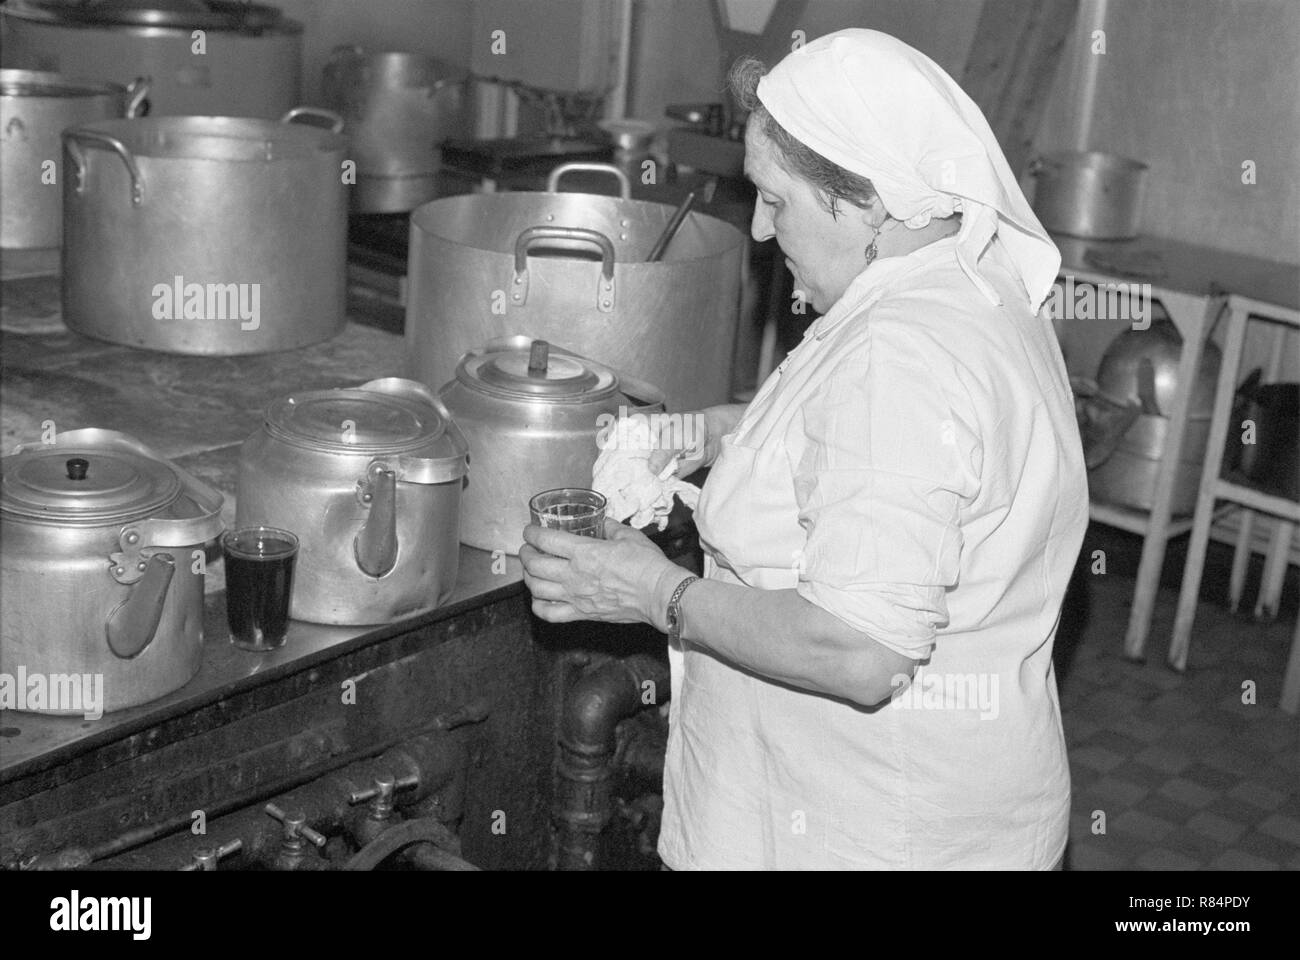 Moskau, UDSSR - November 23, 1989: Kantine im Ministerium für die Automobilindustrie der UDSSR. Frau emloyee der Kantine macht Kaffee in großen Metall Kaffee Topf in der Küche der Kantine. Stockfoto